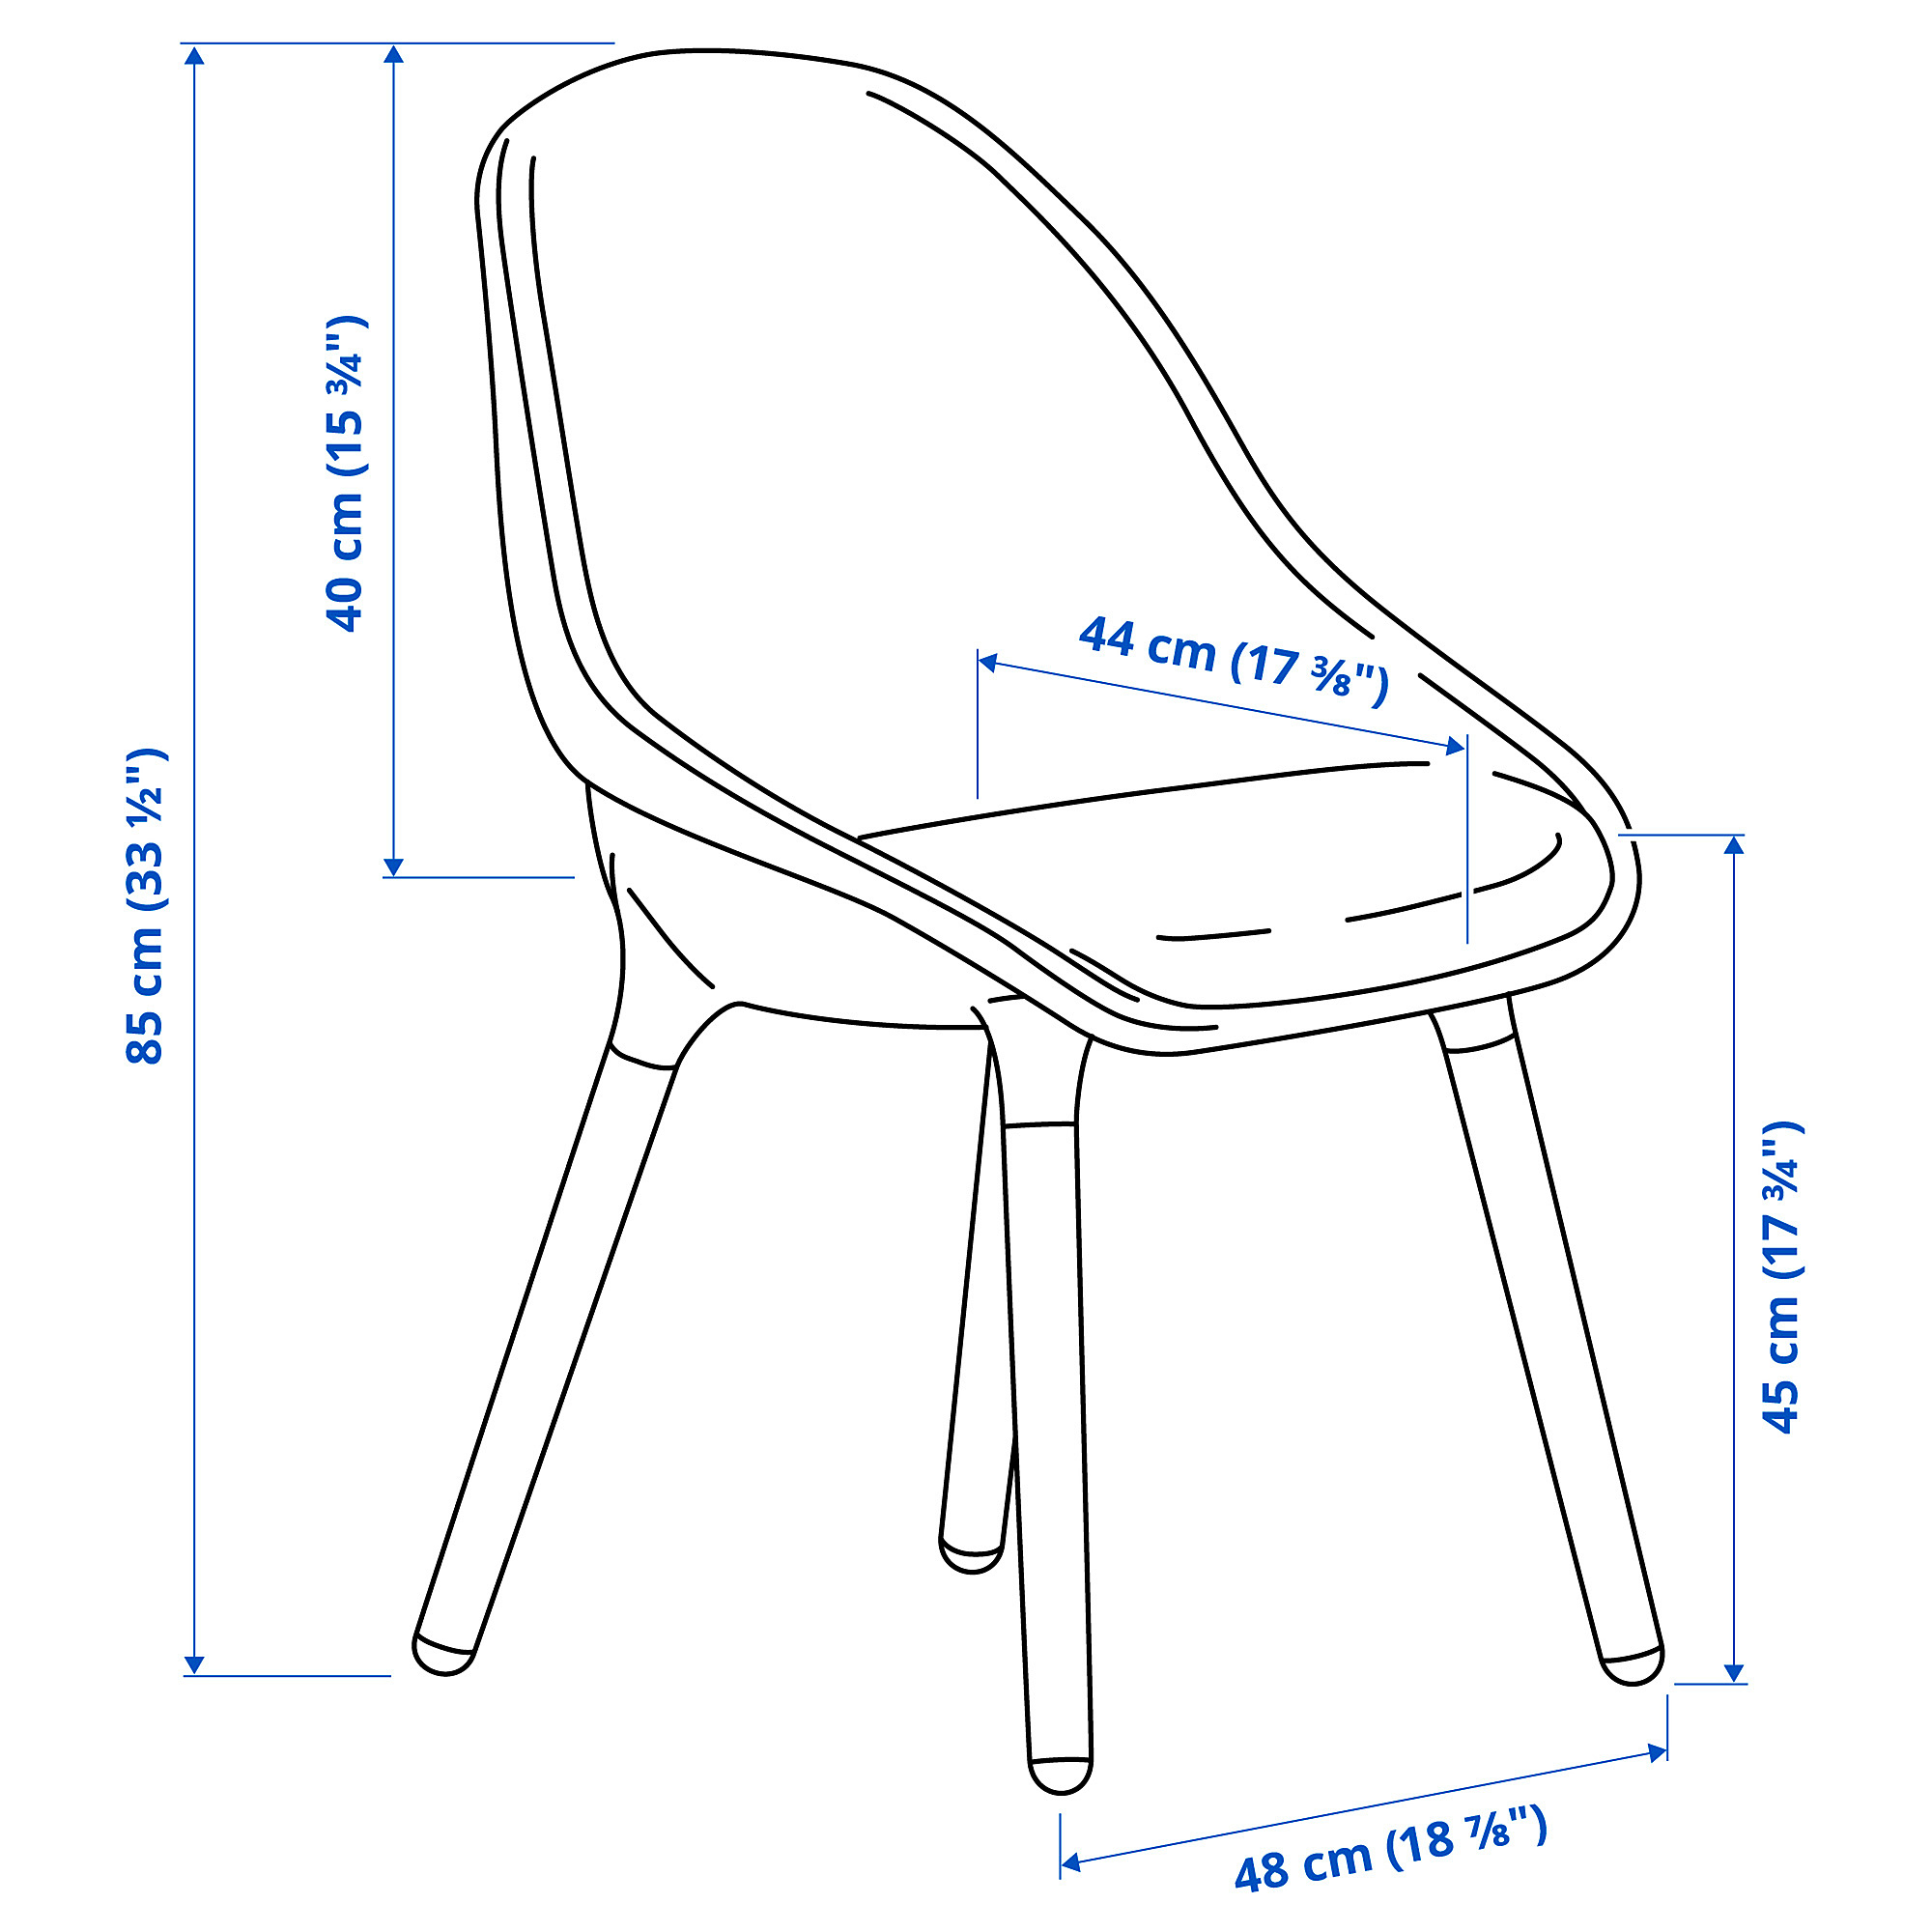 BALTSAR chair